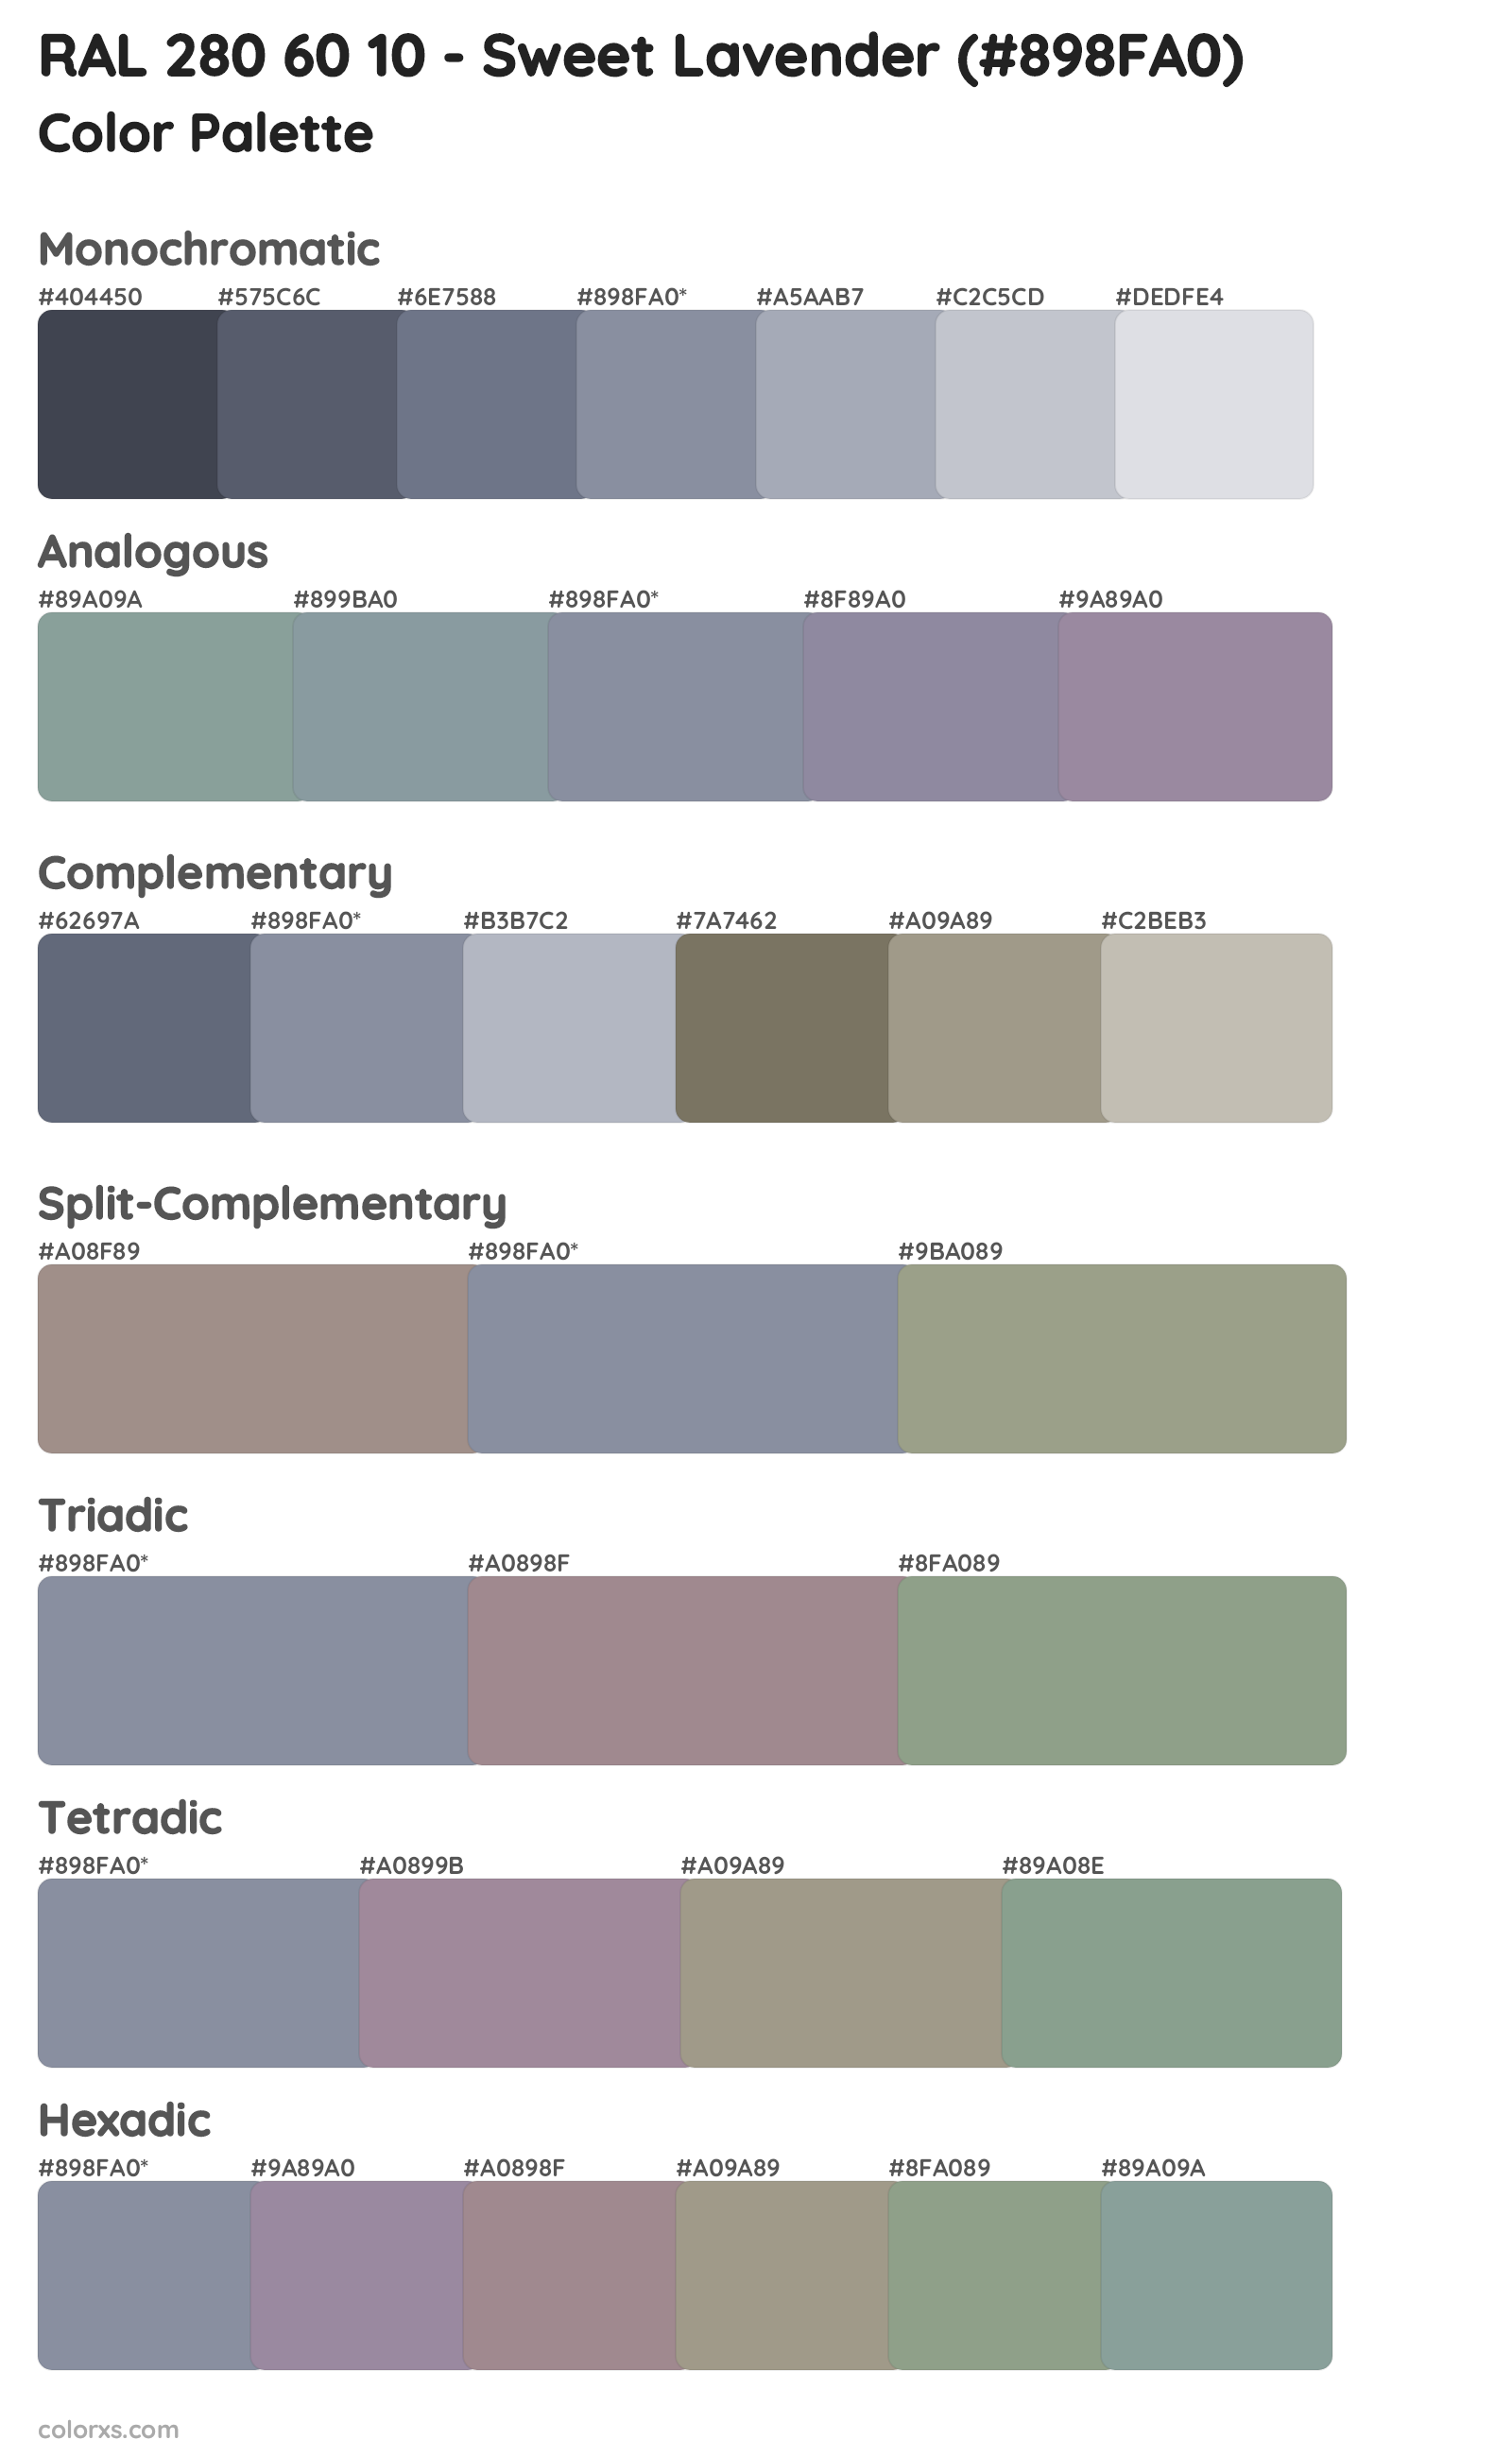 RAL 280 60 10 - Sweet Lavender Color Scheme Palettes